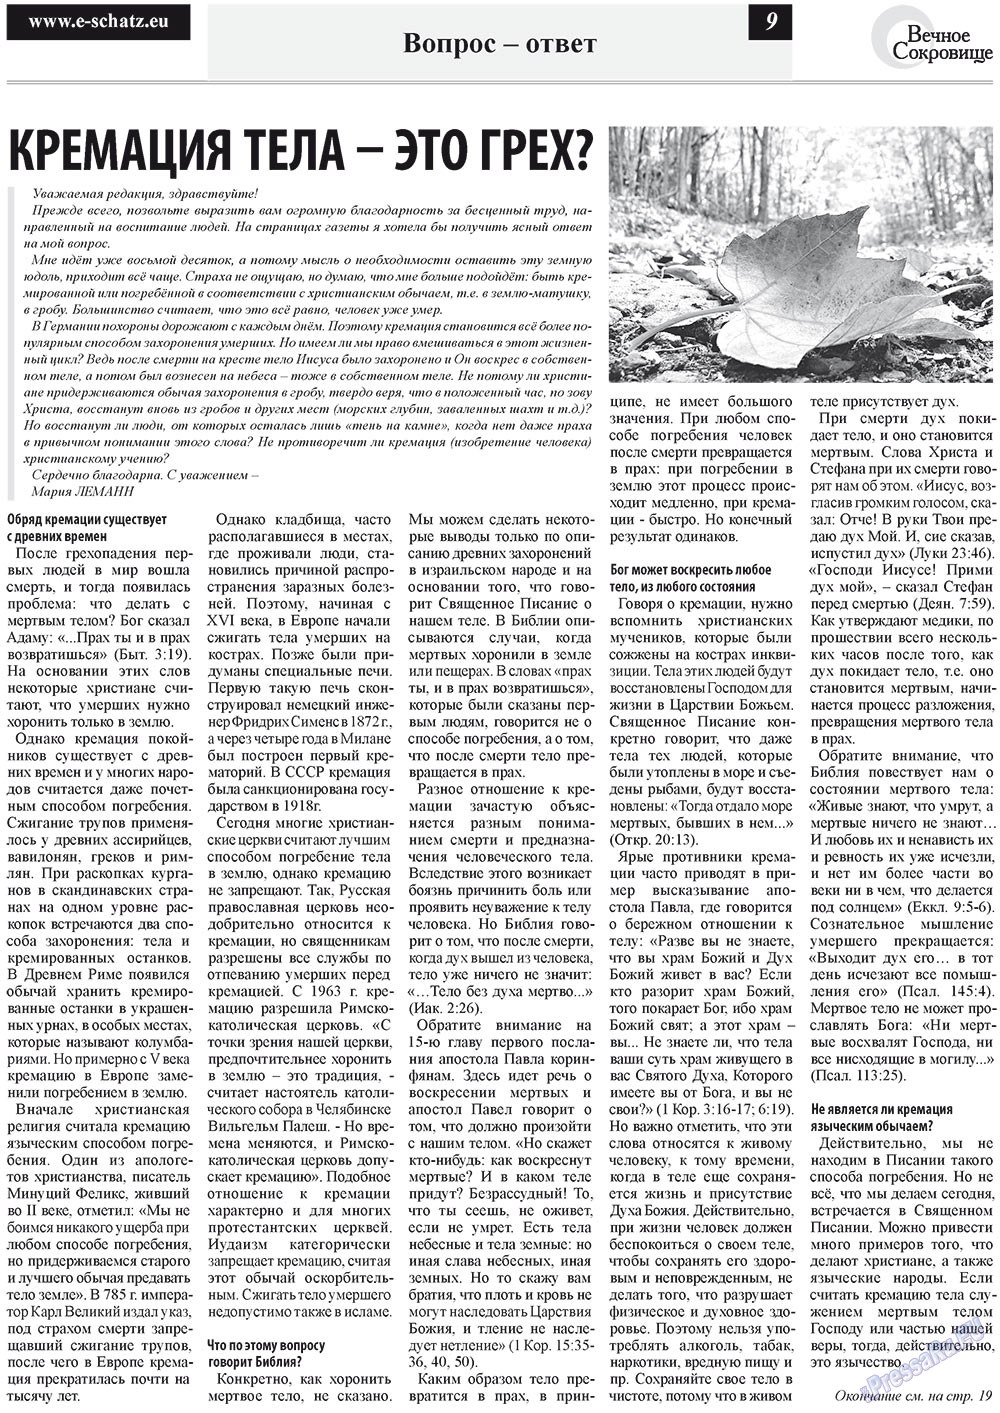 Вечное сокровище (газета). 2012 год, номер 4, стр. 9